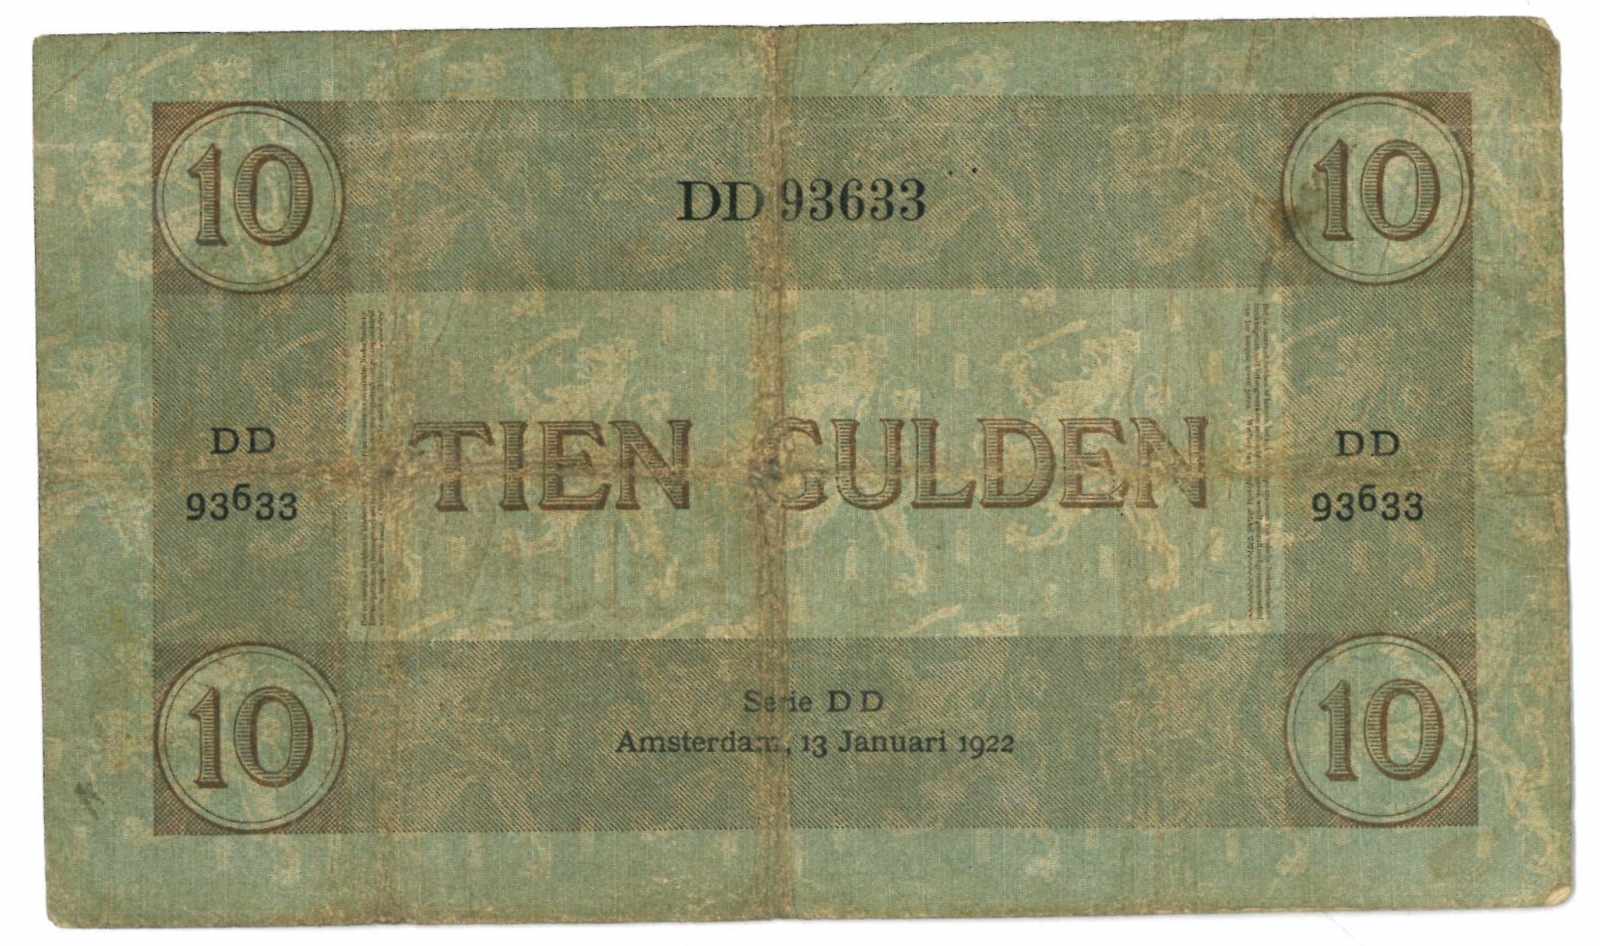 Nederland. 10 gulden. Bankbiljet. Type 1921. Arbeid en Welvaart - Fraai. (Alm. 38-1b. AV. 27.1b. - Image 2 of 2